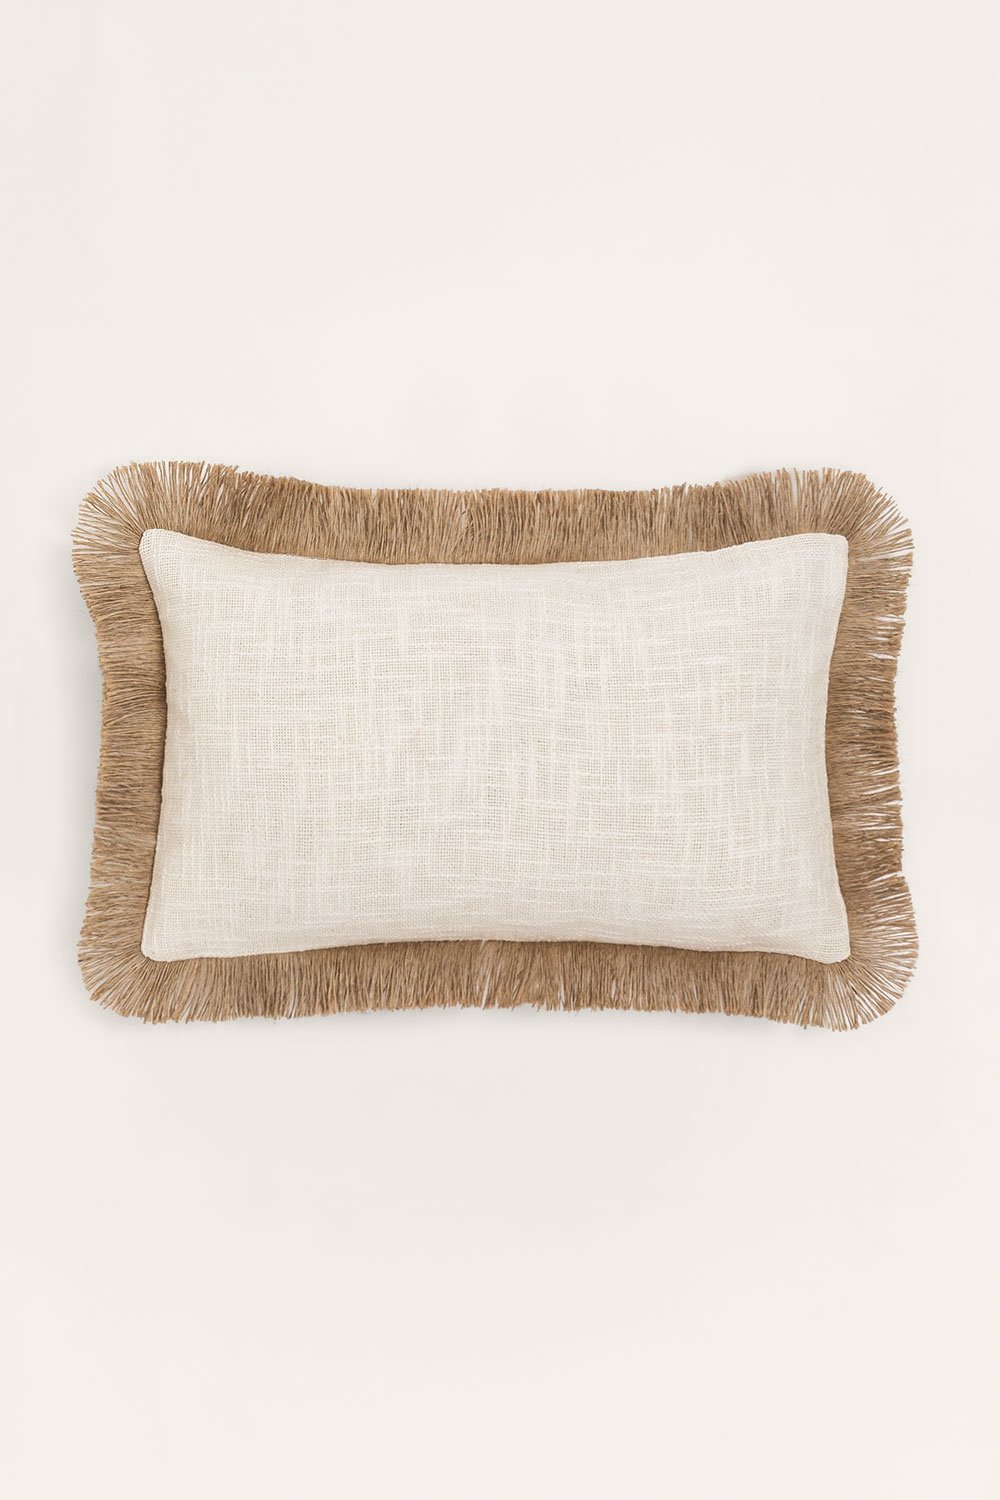 Cuscino Rettangolare in Cotone (30x50 cm) Paraiba, immagine della galleria 1